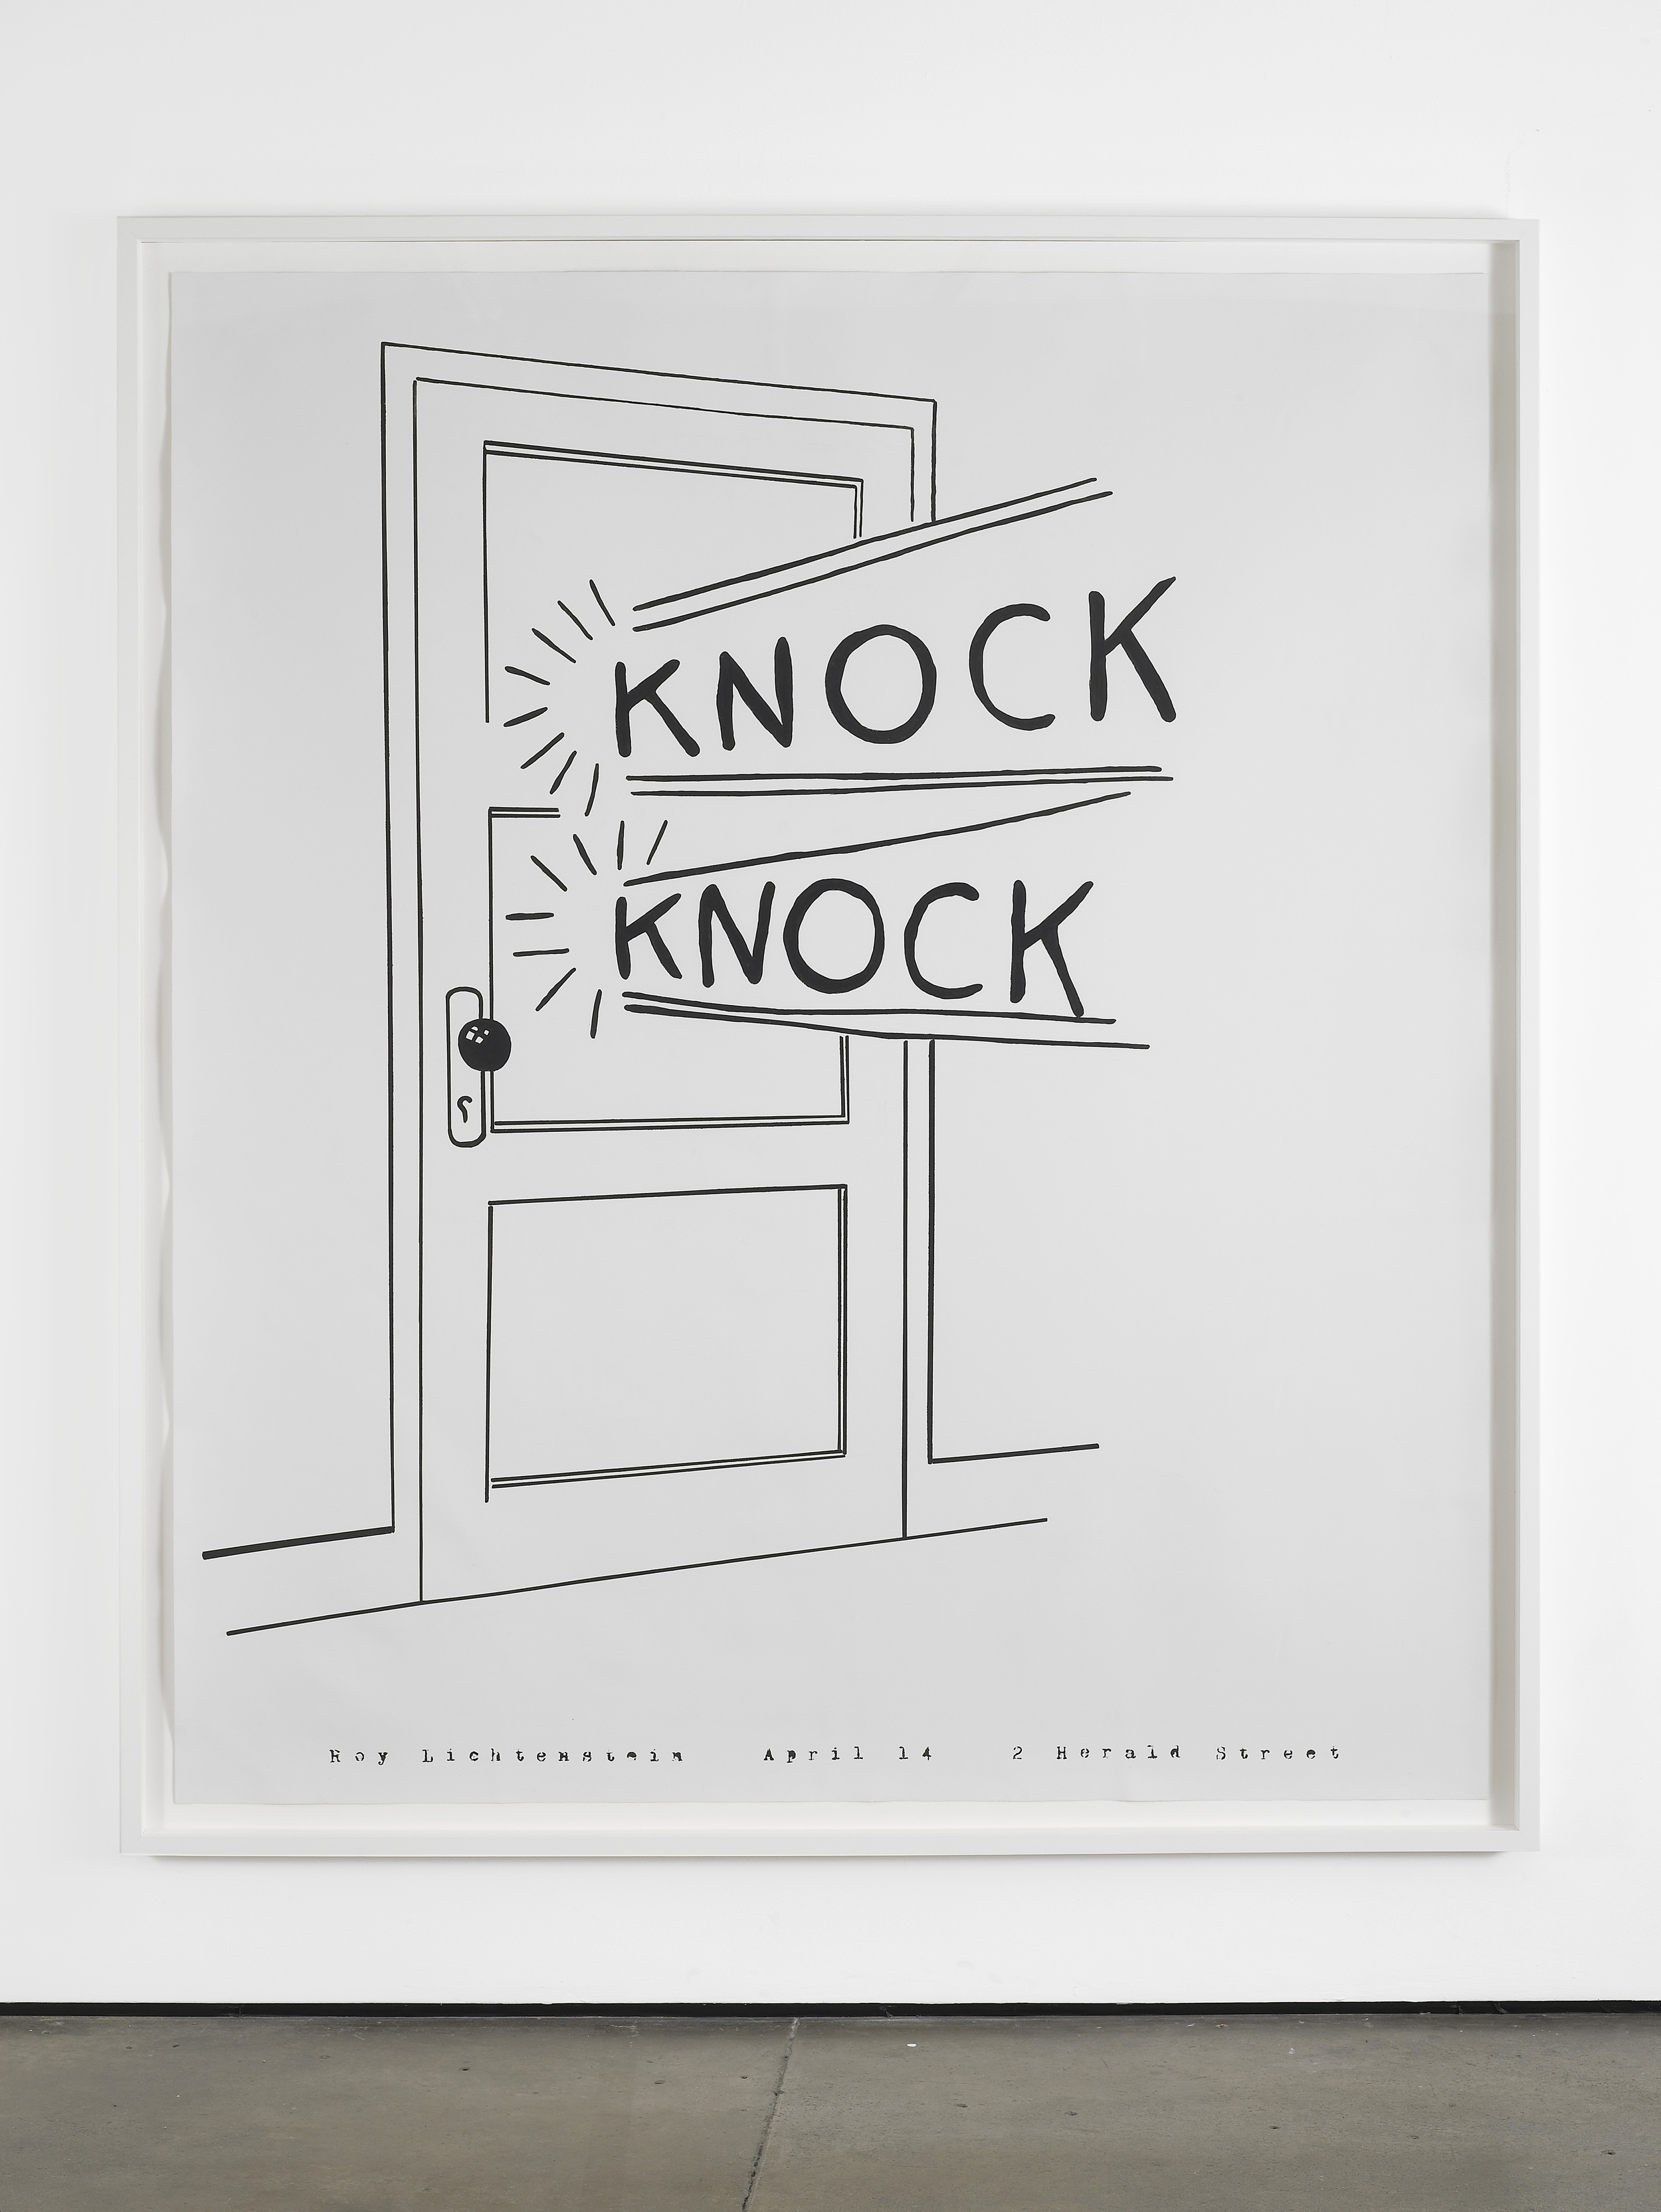     Marc Hundley&nbsp; Knock Knock&nbsp; 2012 Acrylic on canvas 226 x 193.7 cm / 89 x 76.3 in, unframed 